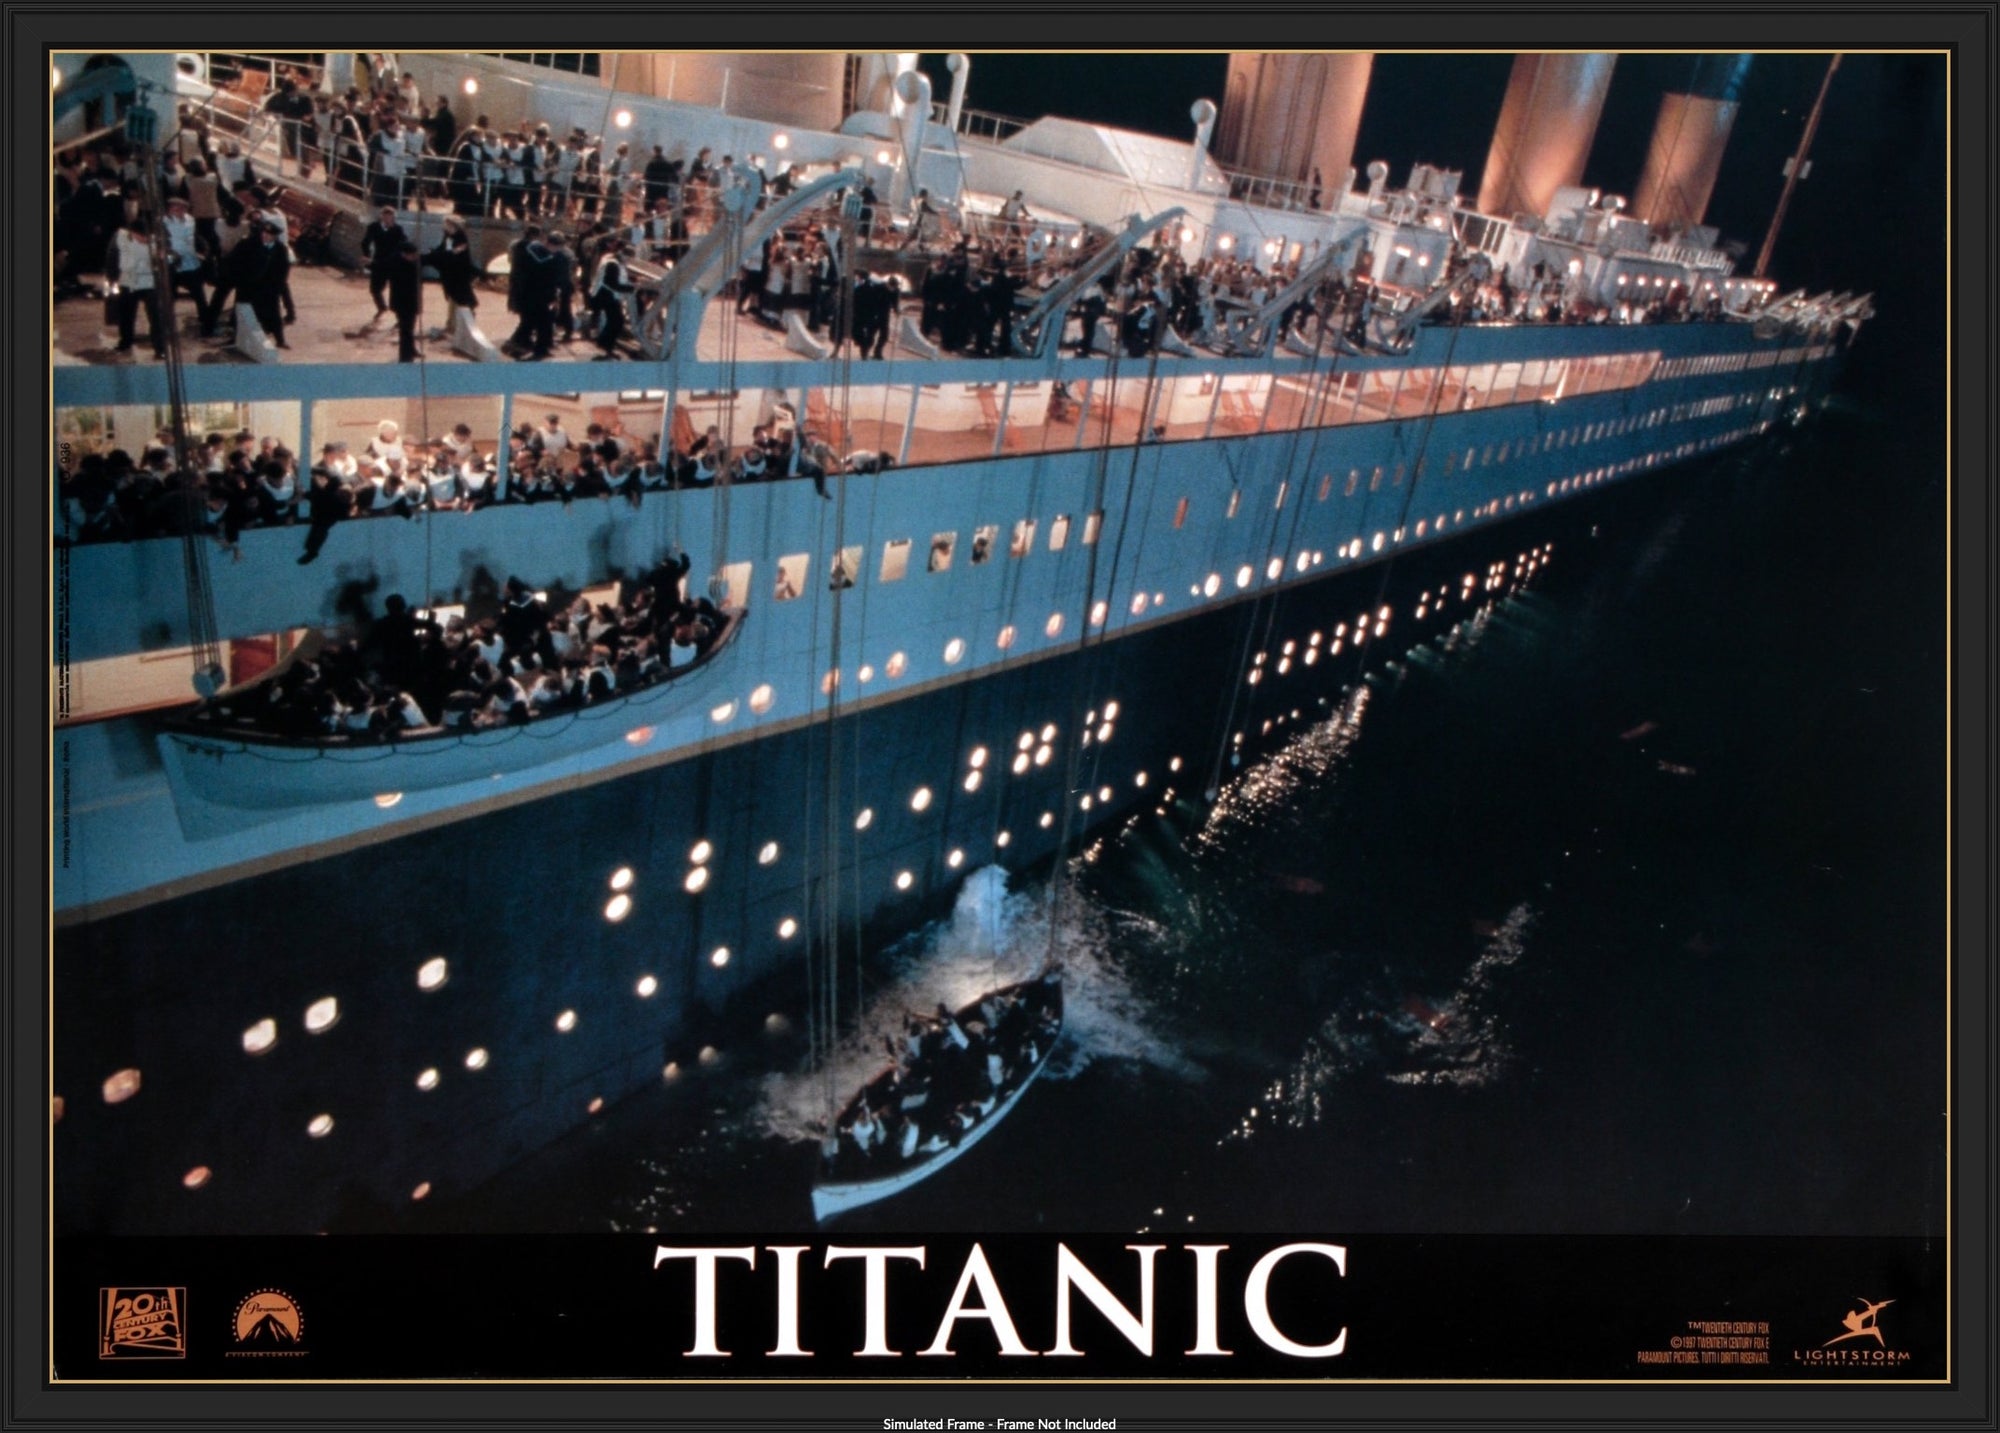 Titanic (1997) original movie poster for sale at Original Film Art